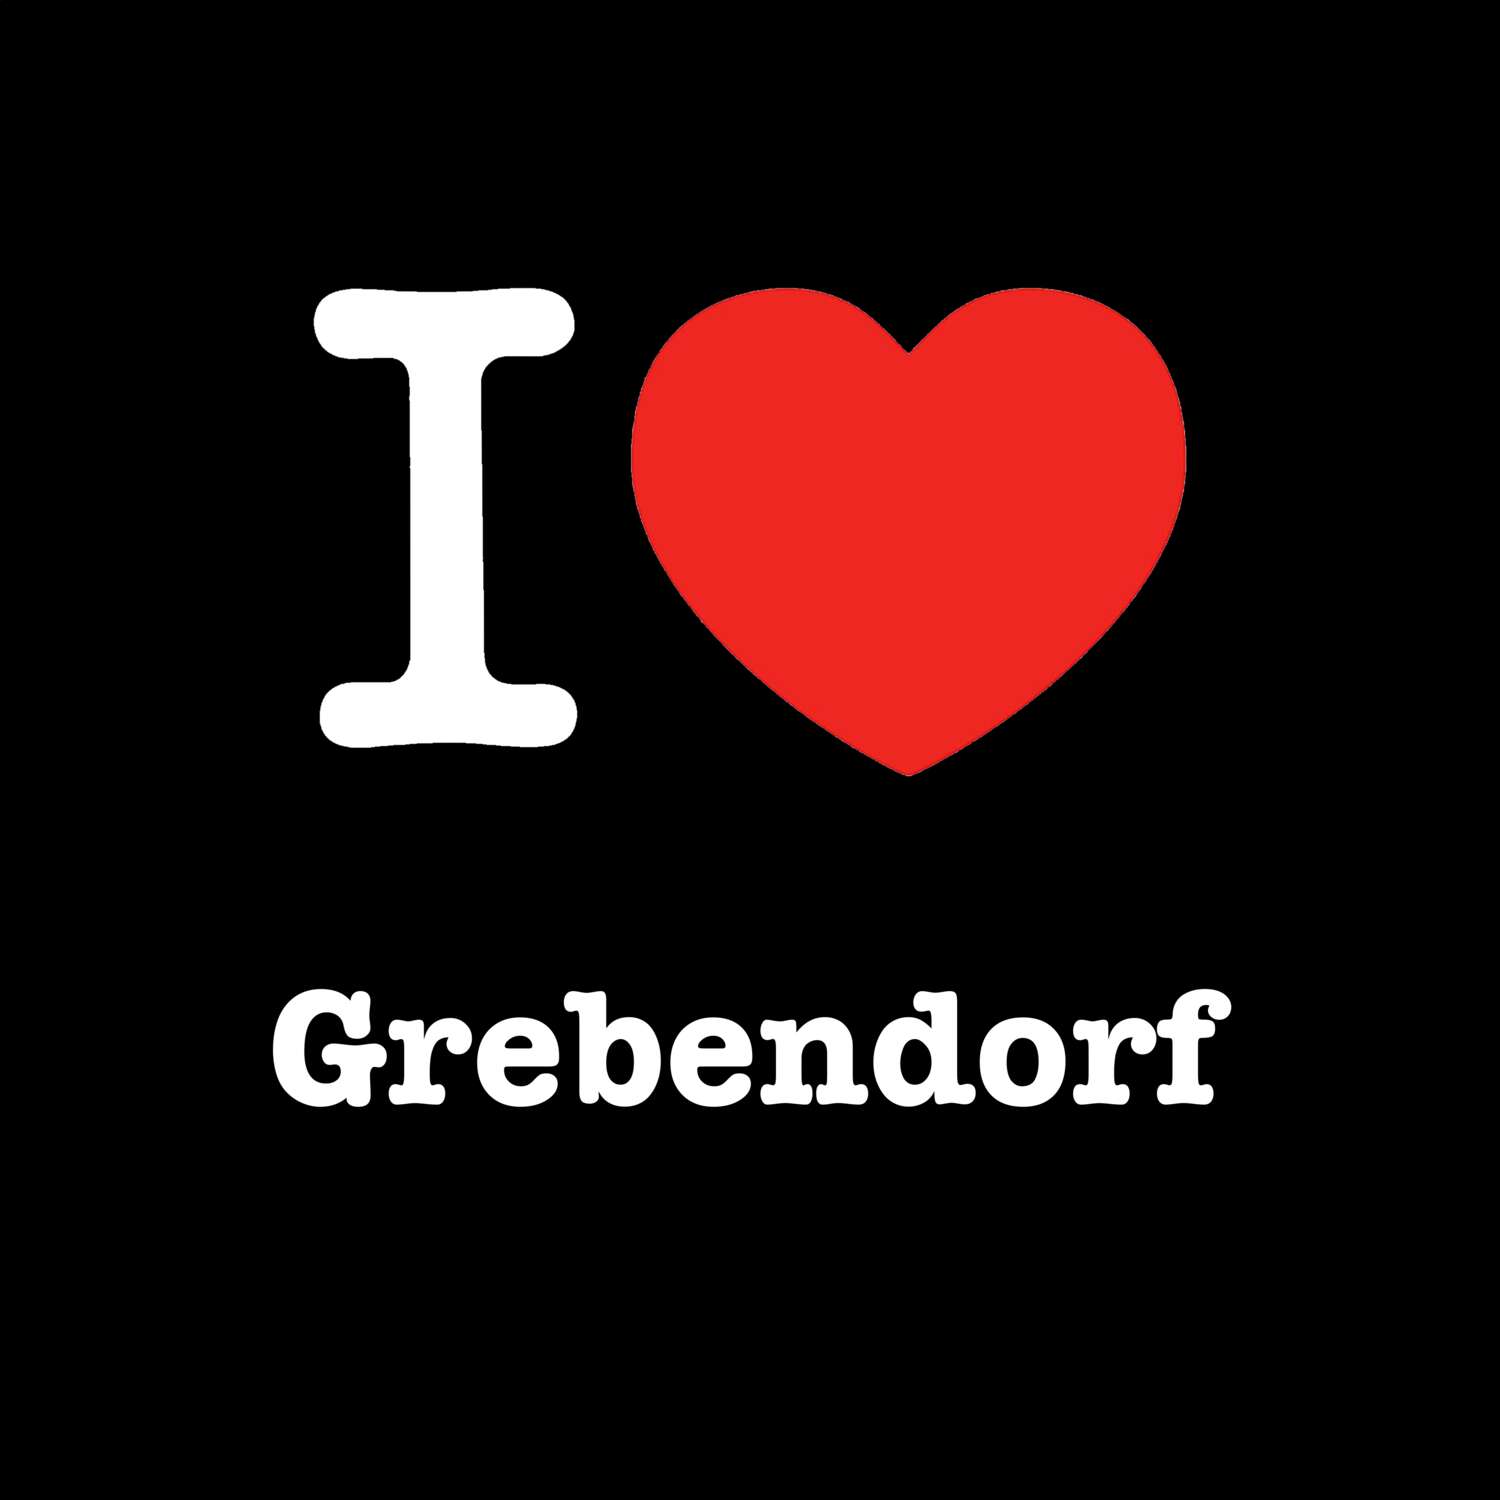 Grebendorf T-Shirt »I love«